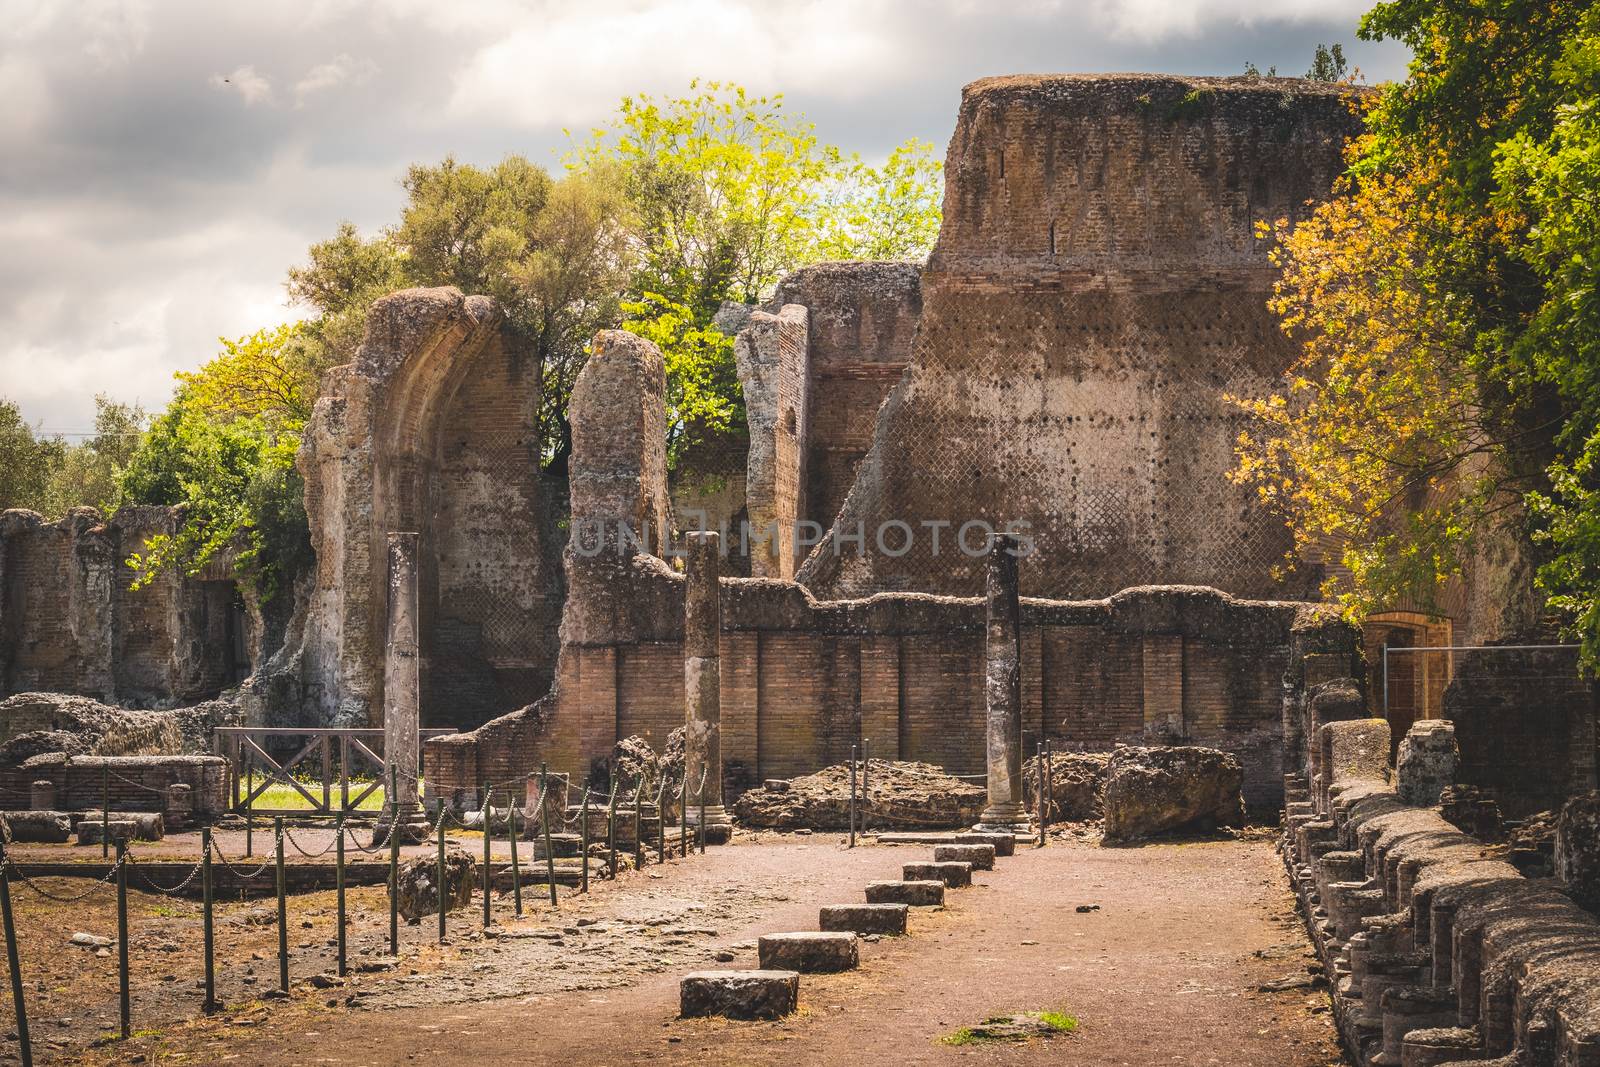 villa adriana in Tivoli - Rome - Italy by LucaLorenzelli